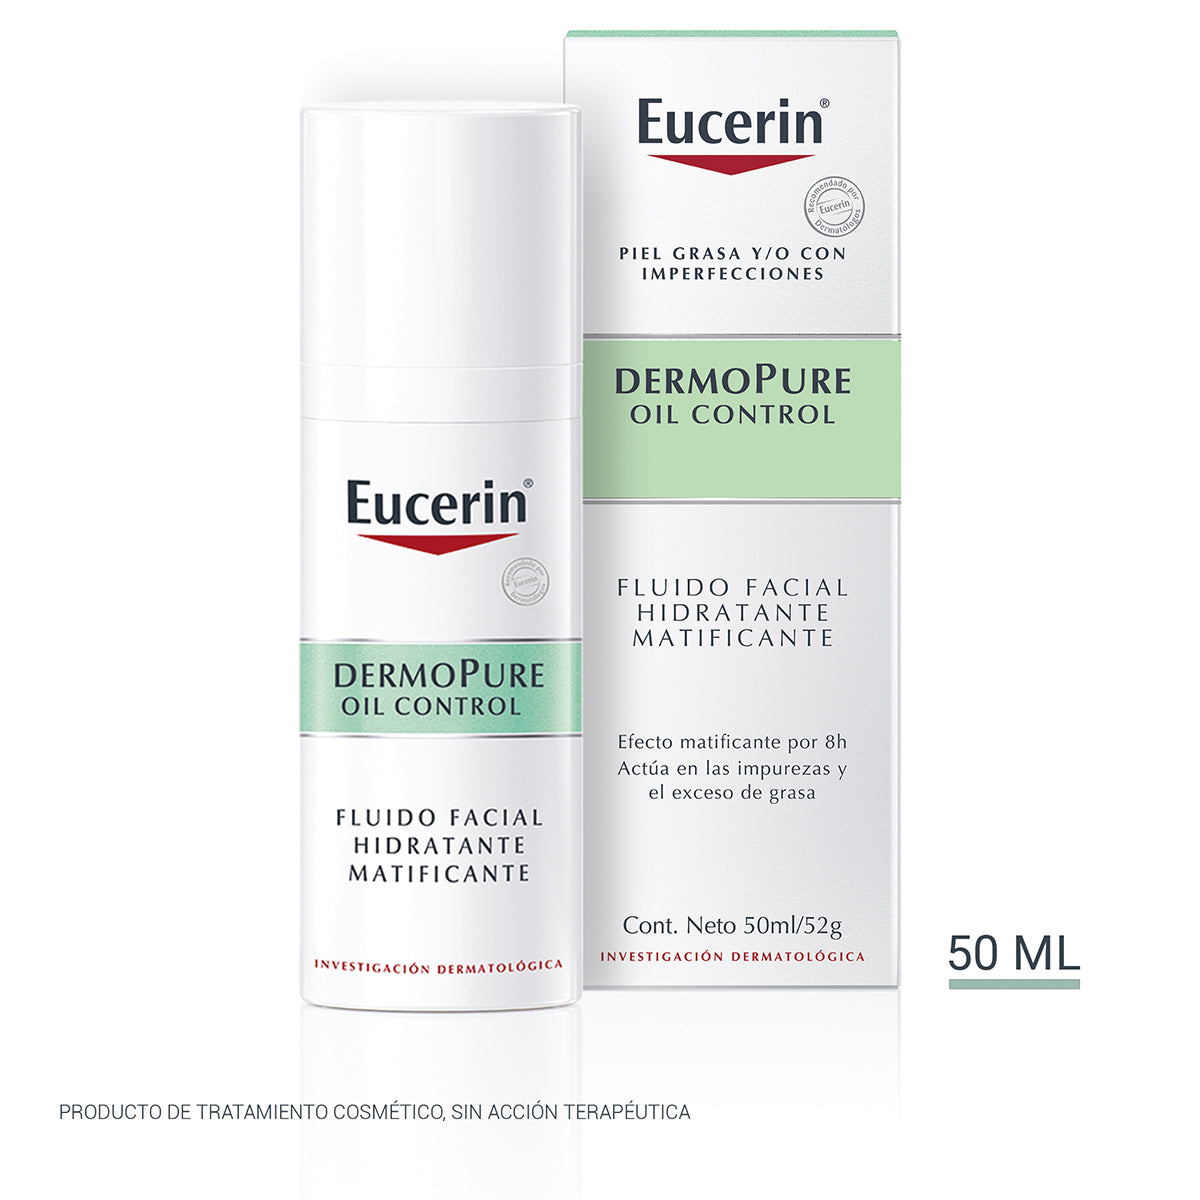 Eucerin fluido facial matificante dermopure piel grasa y/o con tendencia acneica 50ml.